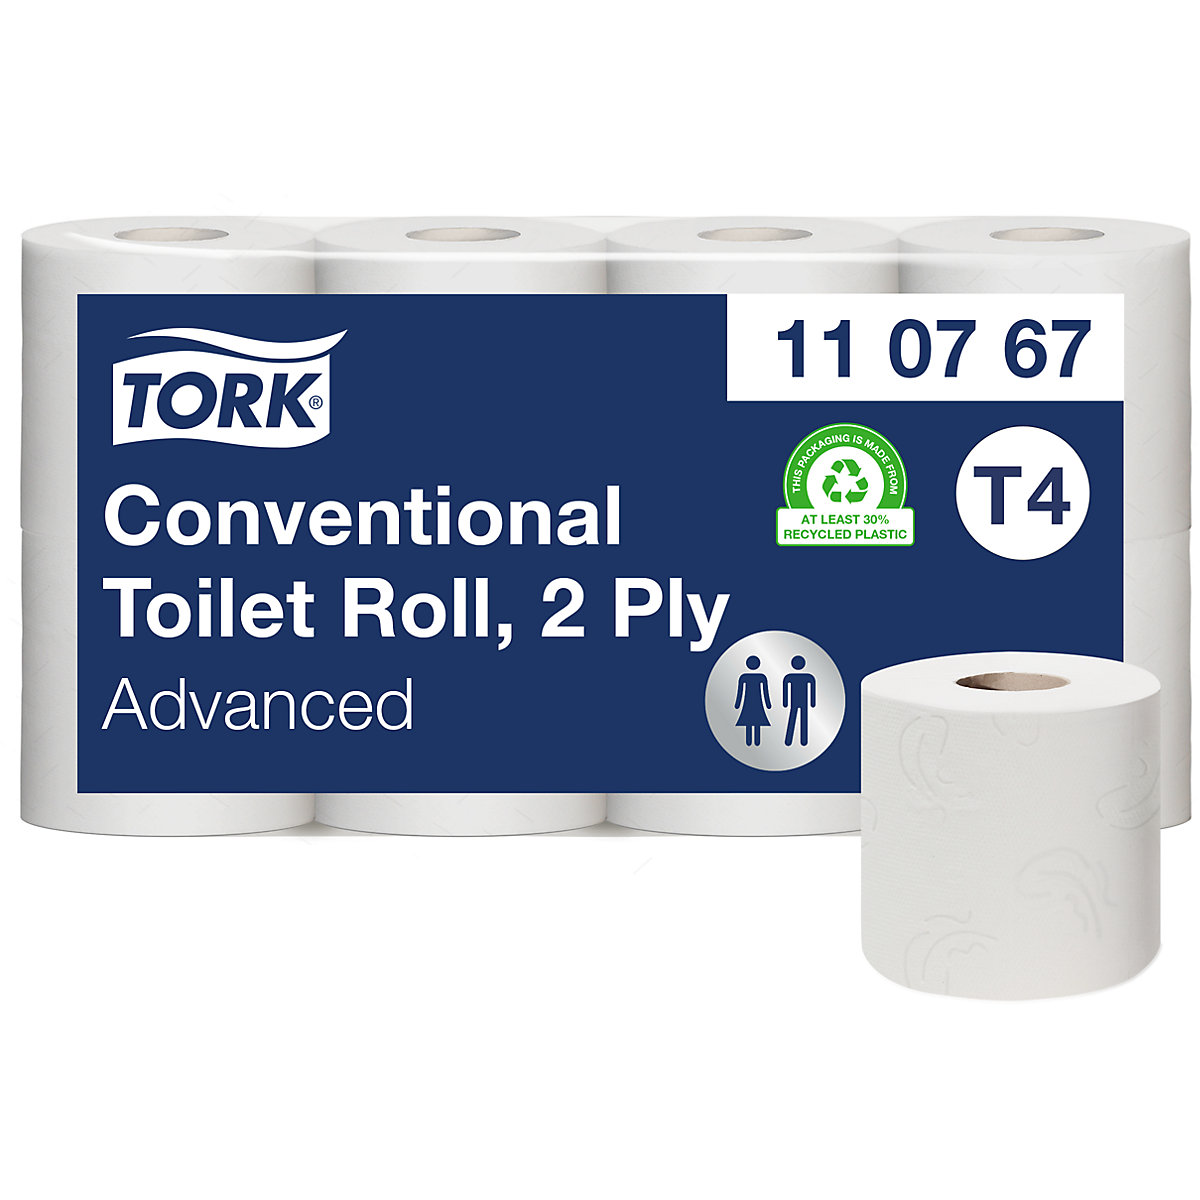 Malé role toaletního papíru, role pro domácnost – TORK